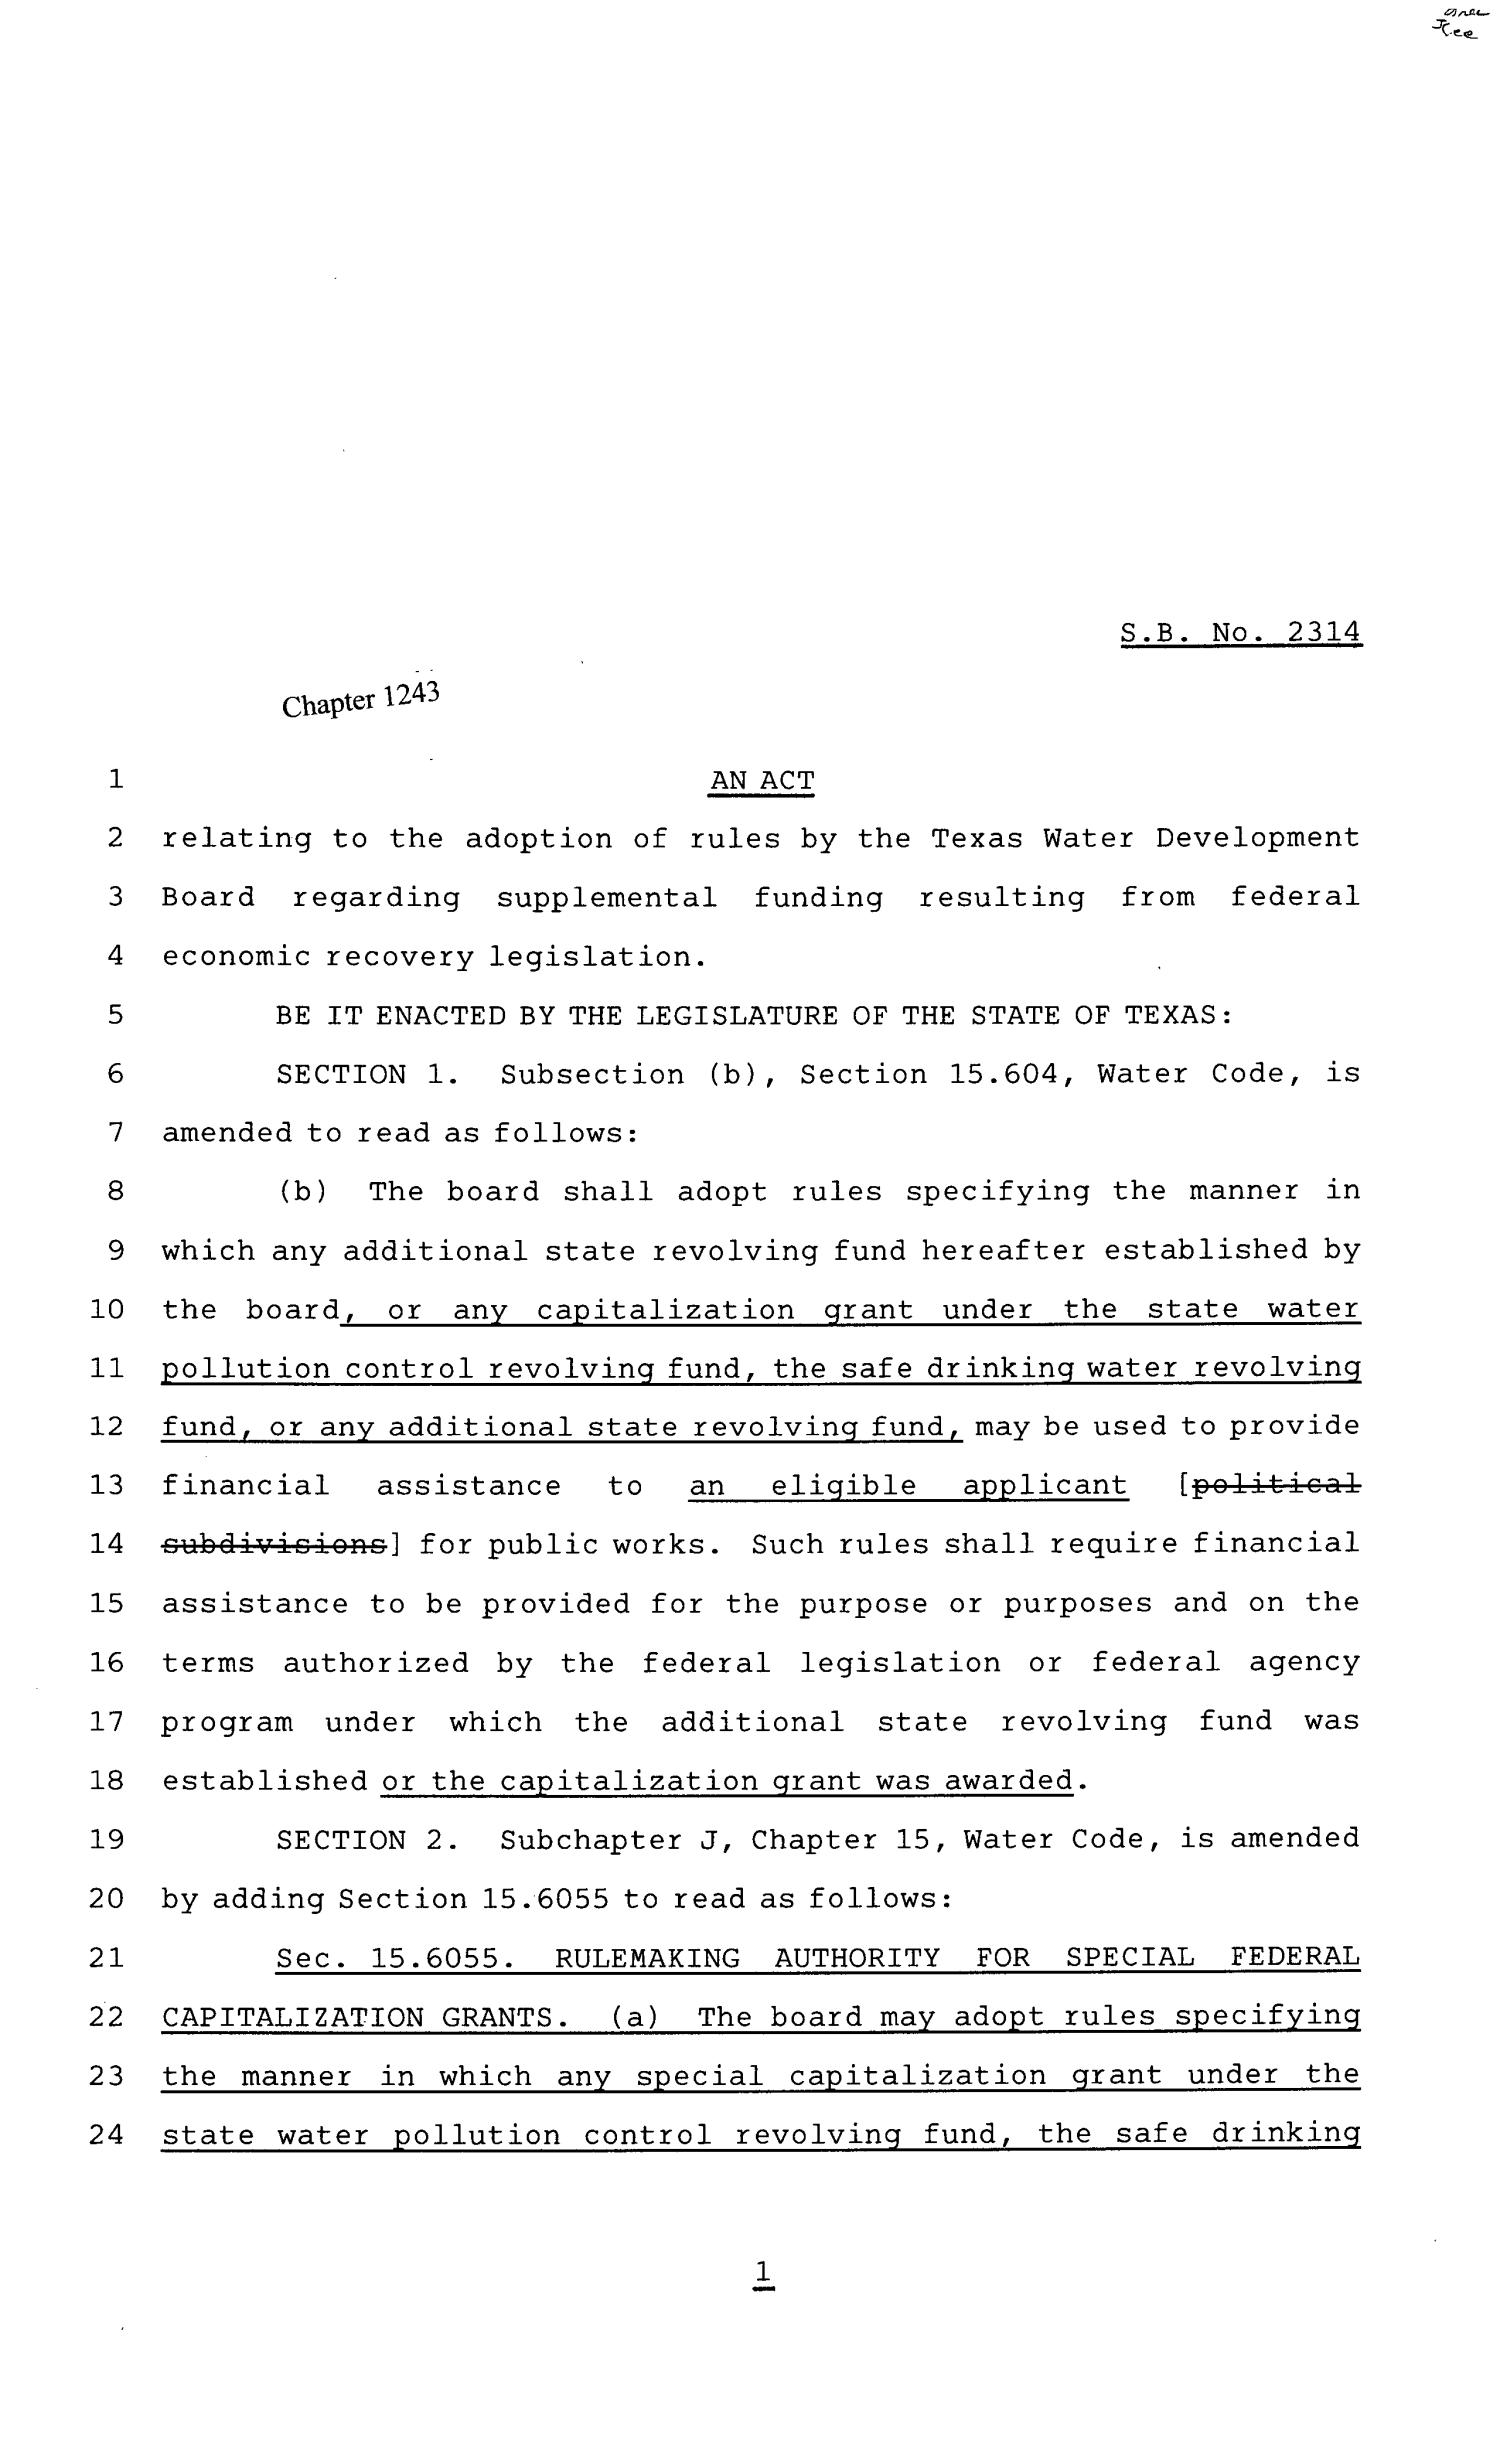 81st Texas Legislature, Senate Bill 2314, Chapter 1243
                                                
                                                    [Sequence #]: 1 of 4
                                                